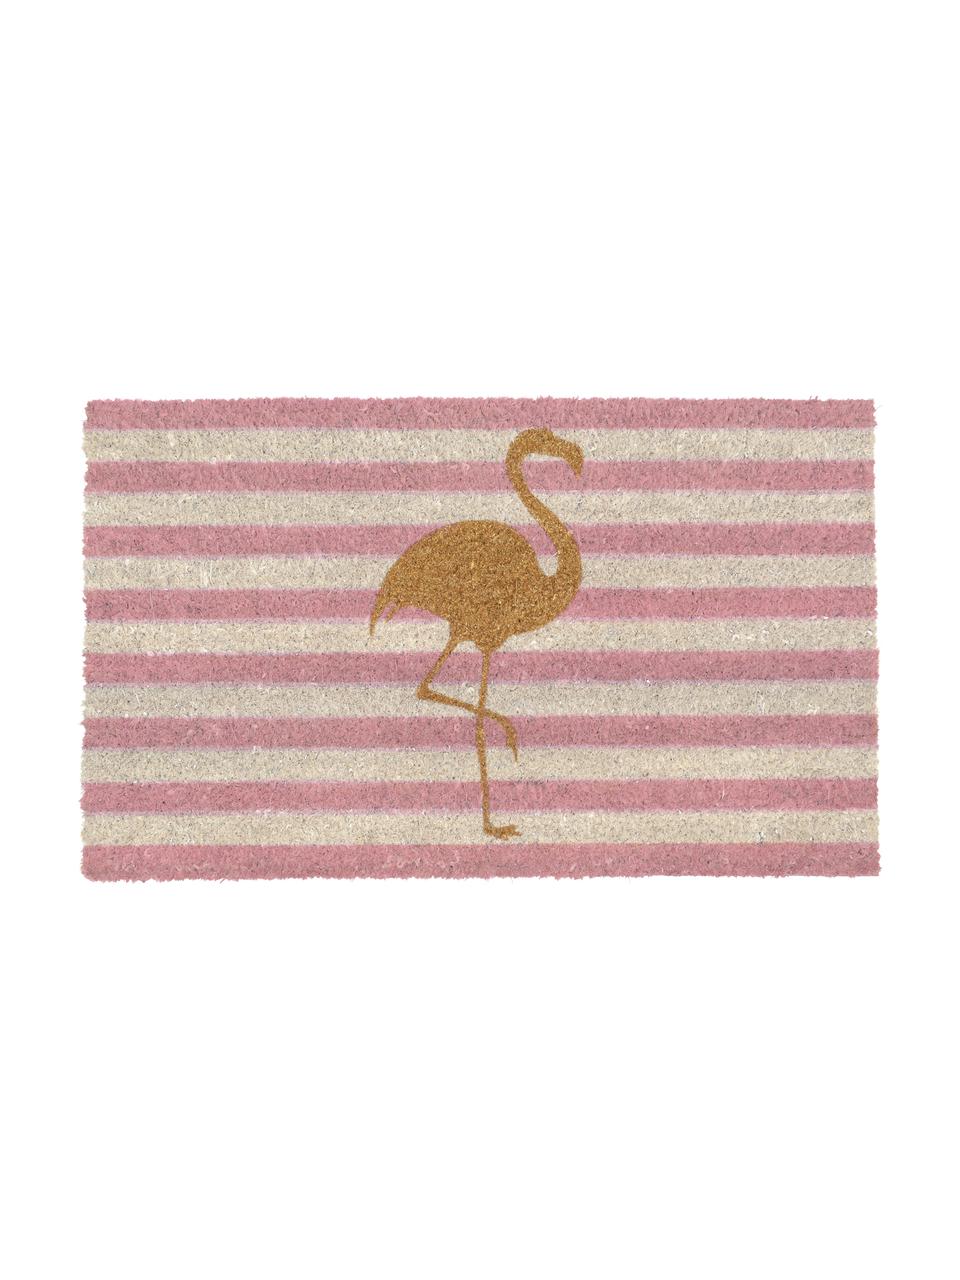 Fußmatte Twinkling Flamingo, Oberseite: Kokosfaser, Unterseite: Vinyl, Rosa, Goldfarben, L 75 x B 45 cm